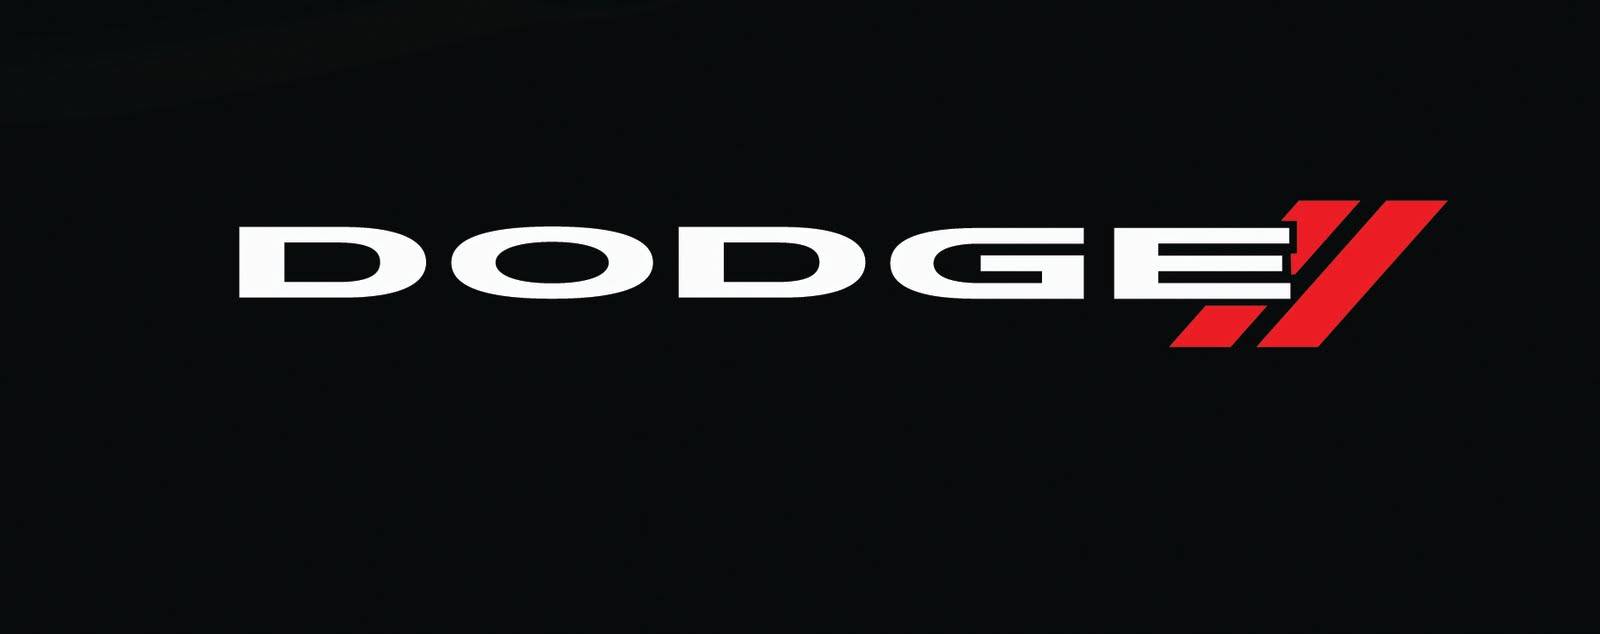 Dodge-emblem.jpg